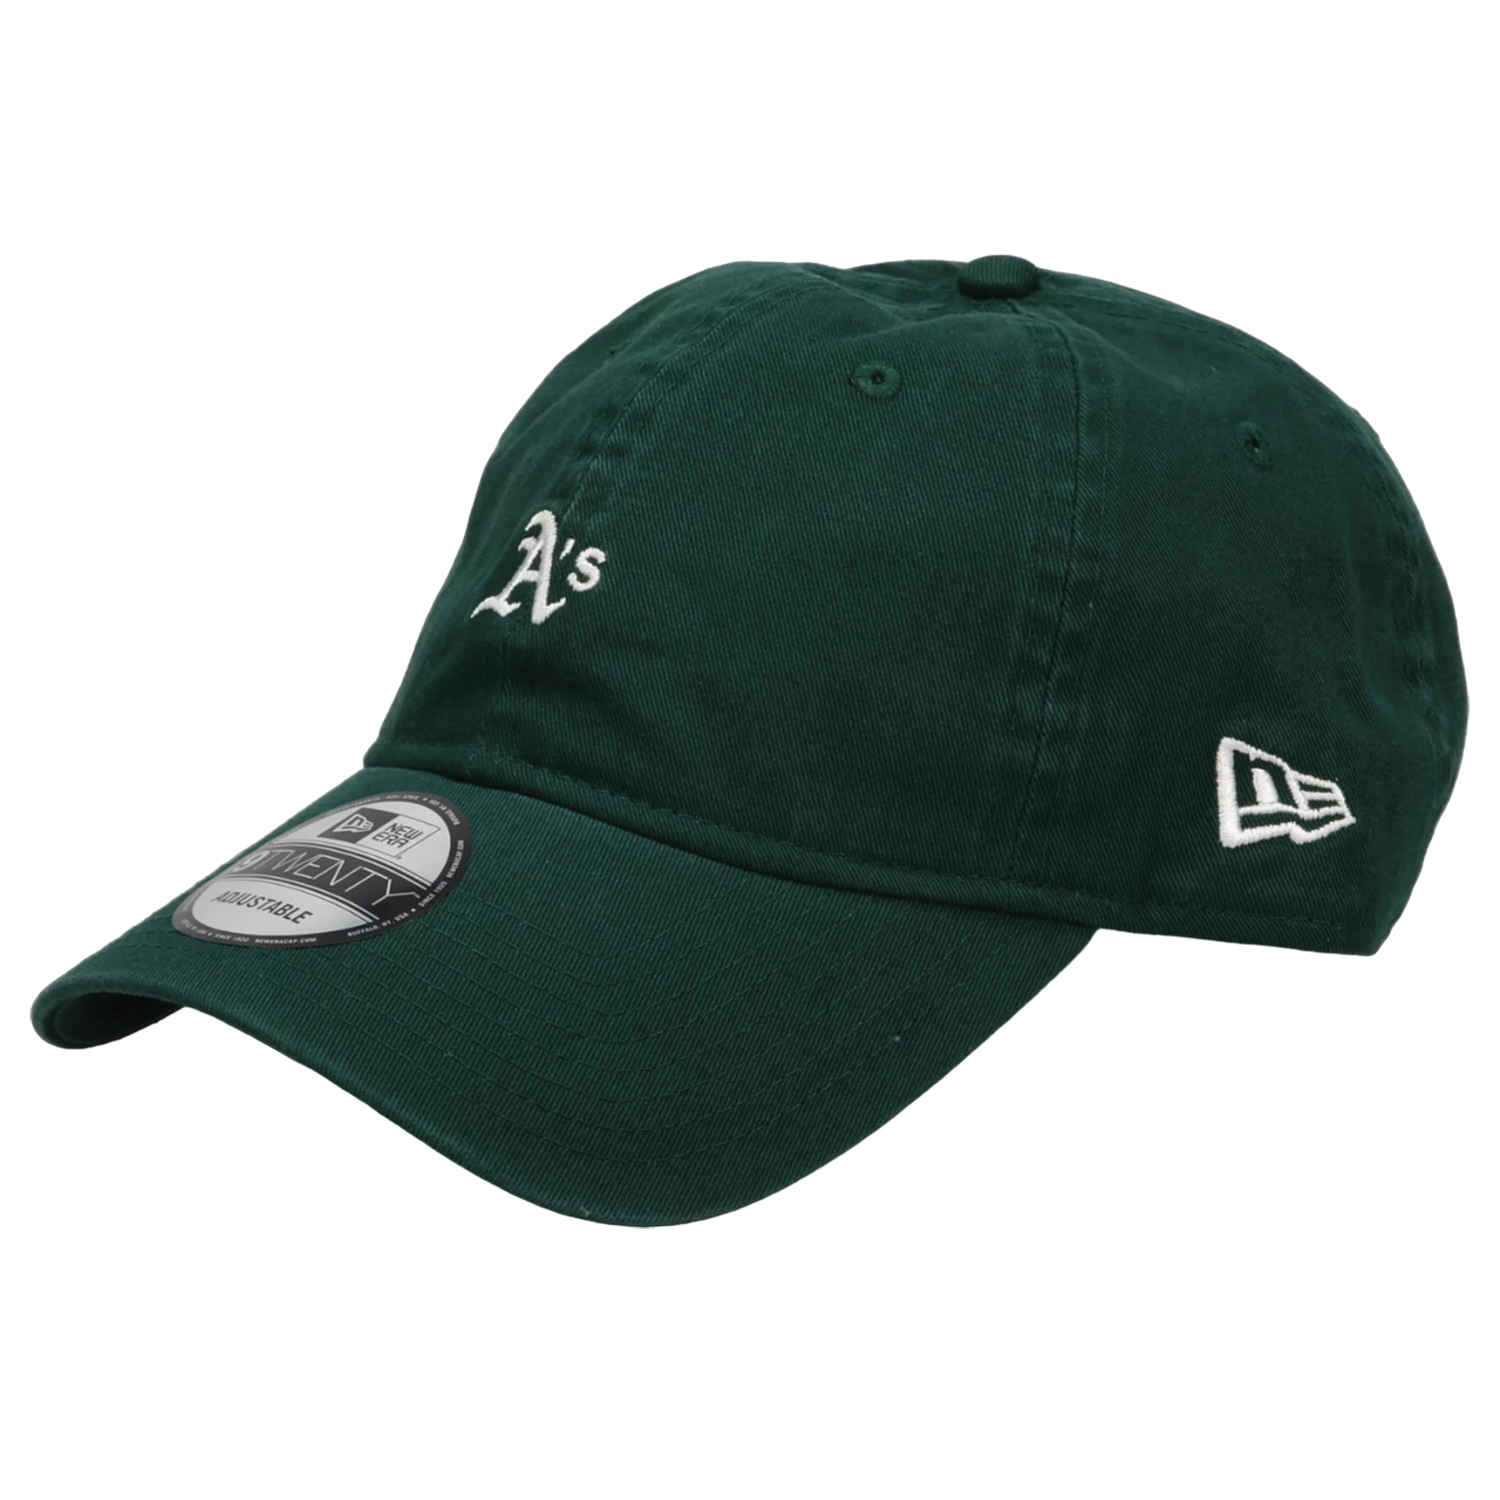 ニューエラ NEW ERA キャップ 帽子 メンズ レディース メジャーリーグ MLB 920 MINI LOGO 1375